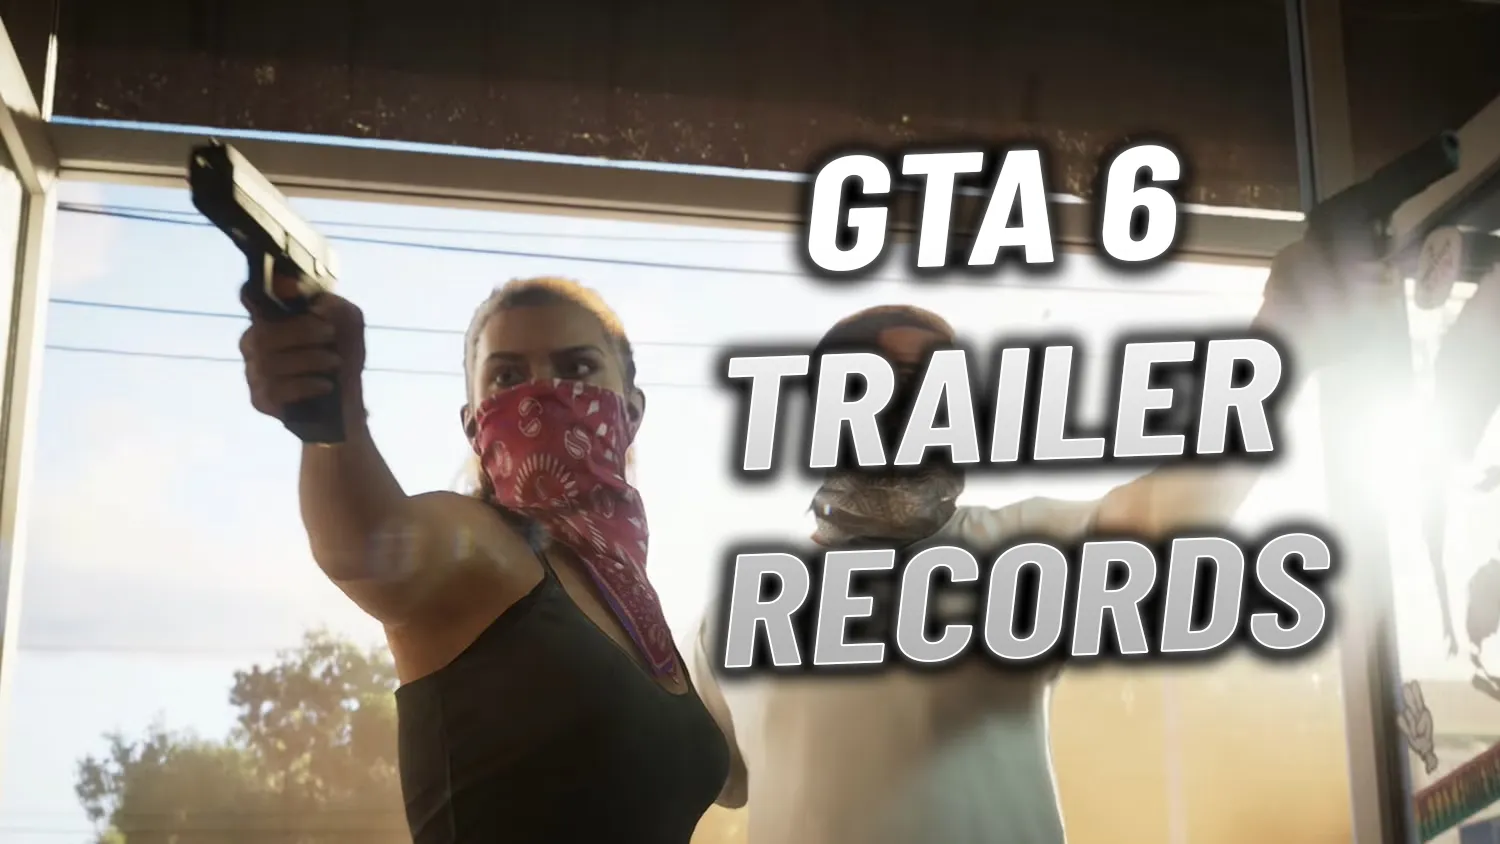 Grand Theft Auto VI Trailer Breaks Record for Most  Views